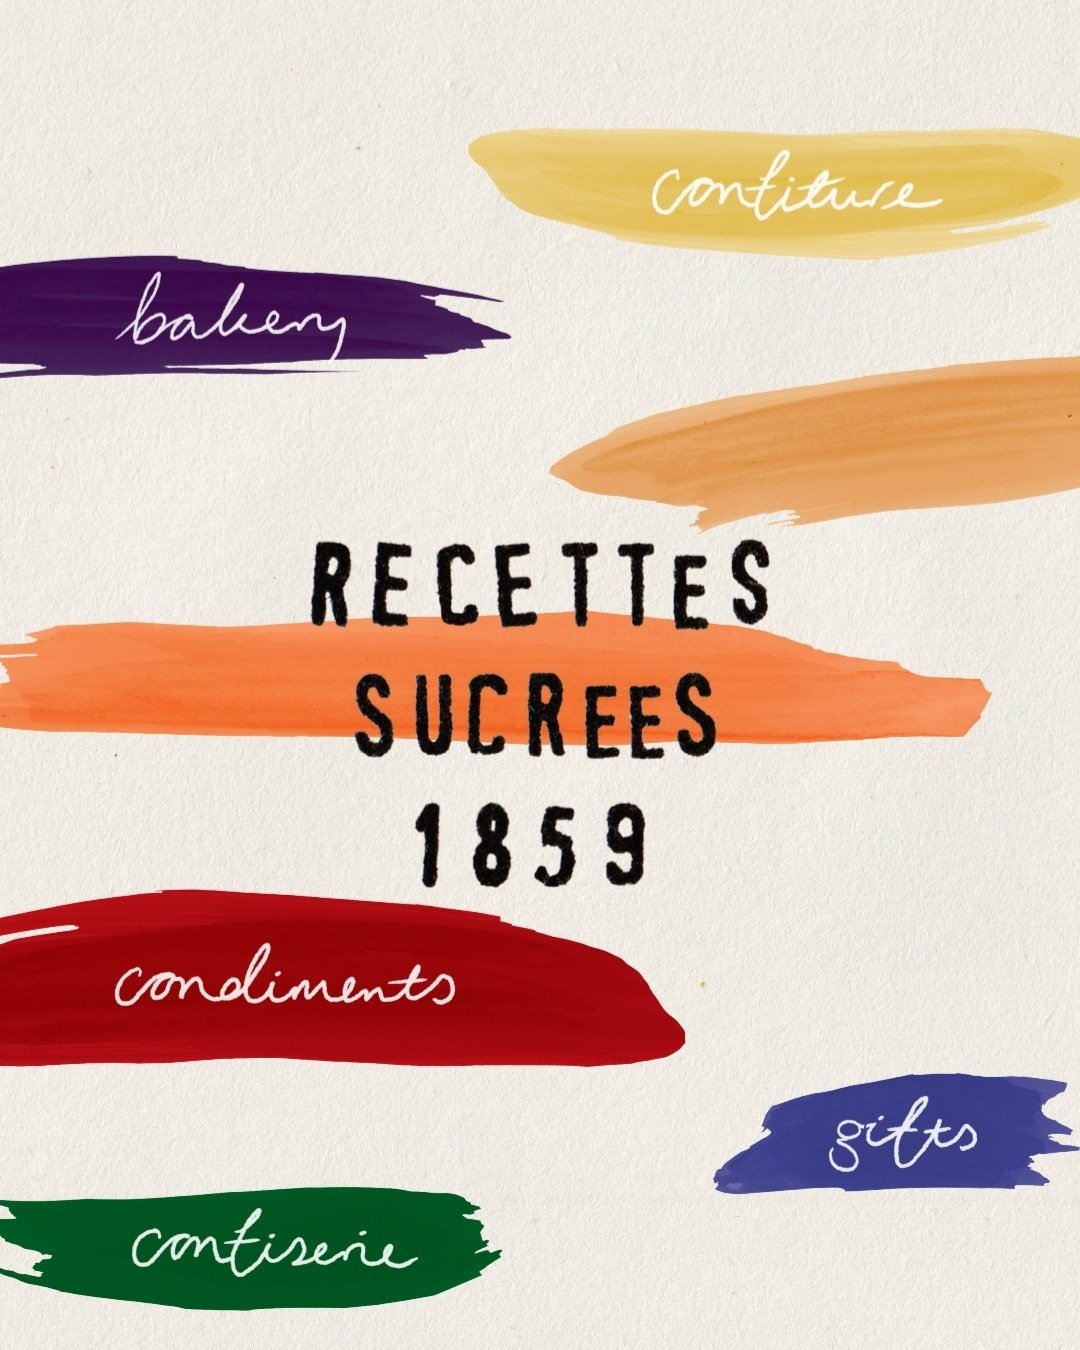 Recettes Sucrées 1859's account image